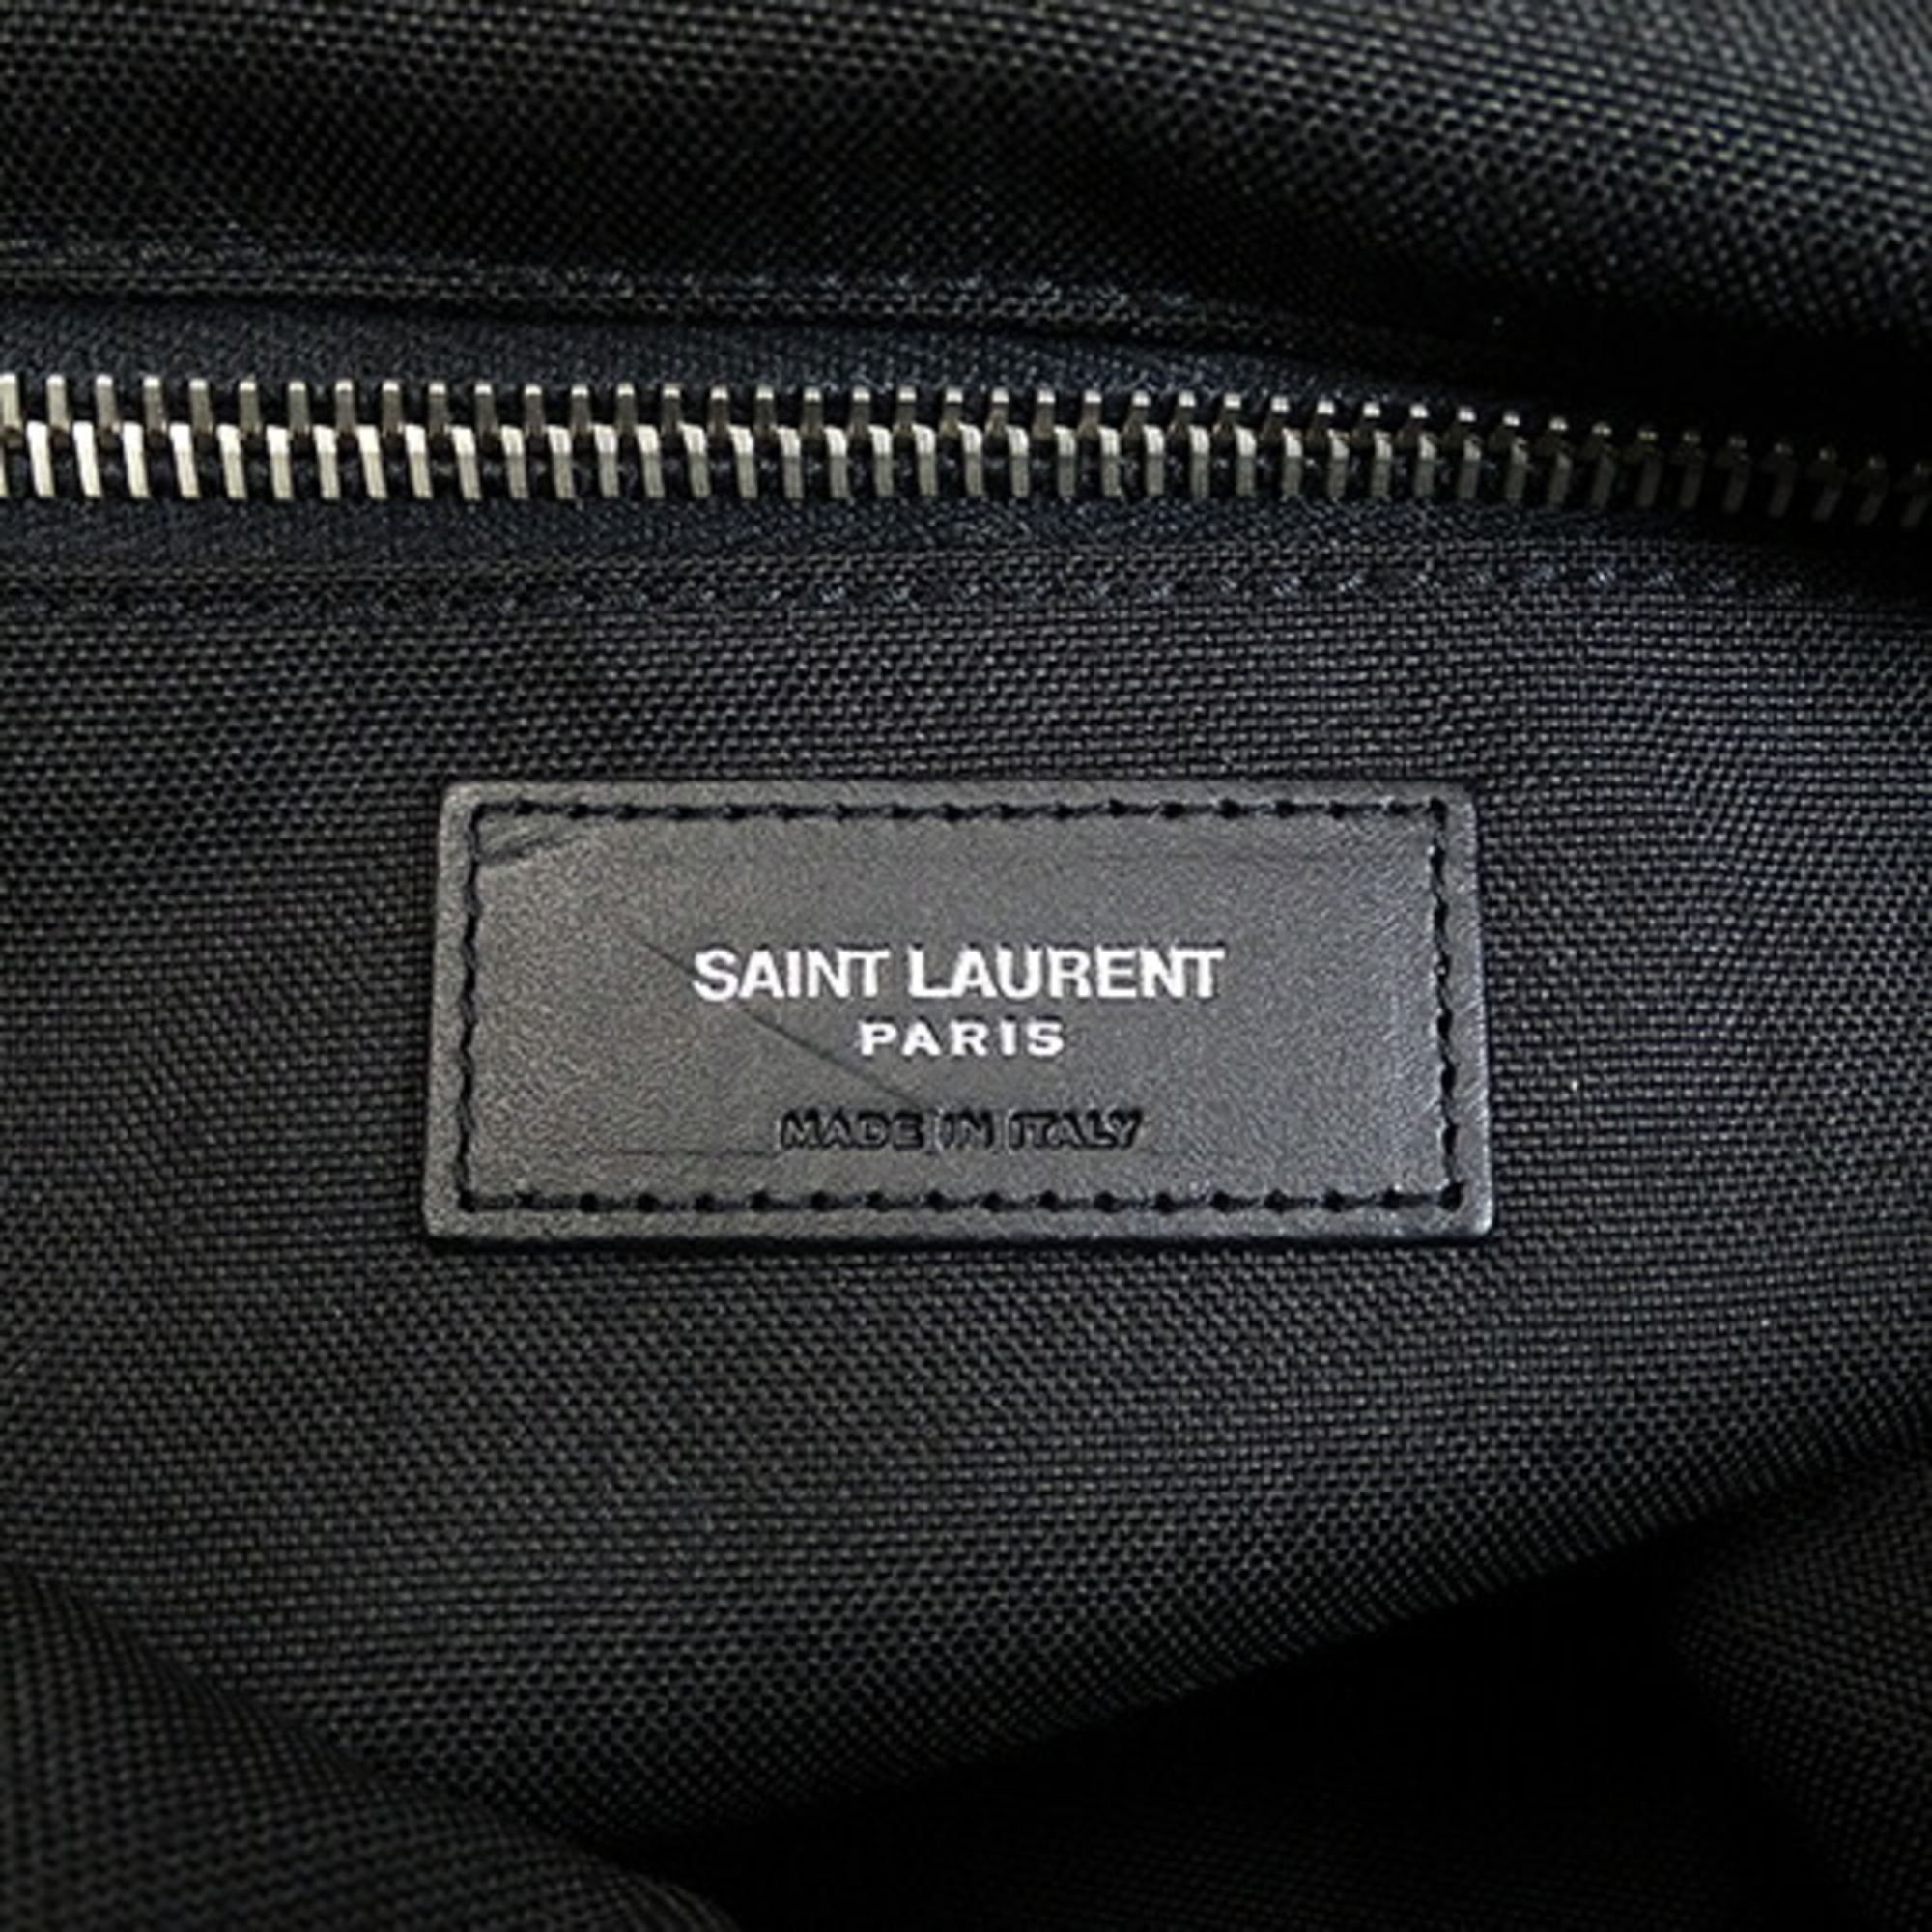 Saint Laurent SAINT LAURENT Bag Men's Tote City Canvas Black 553917